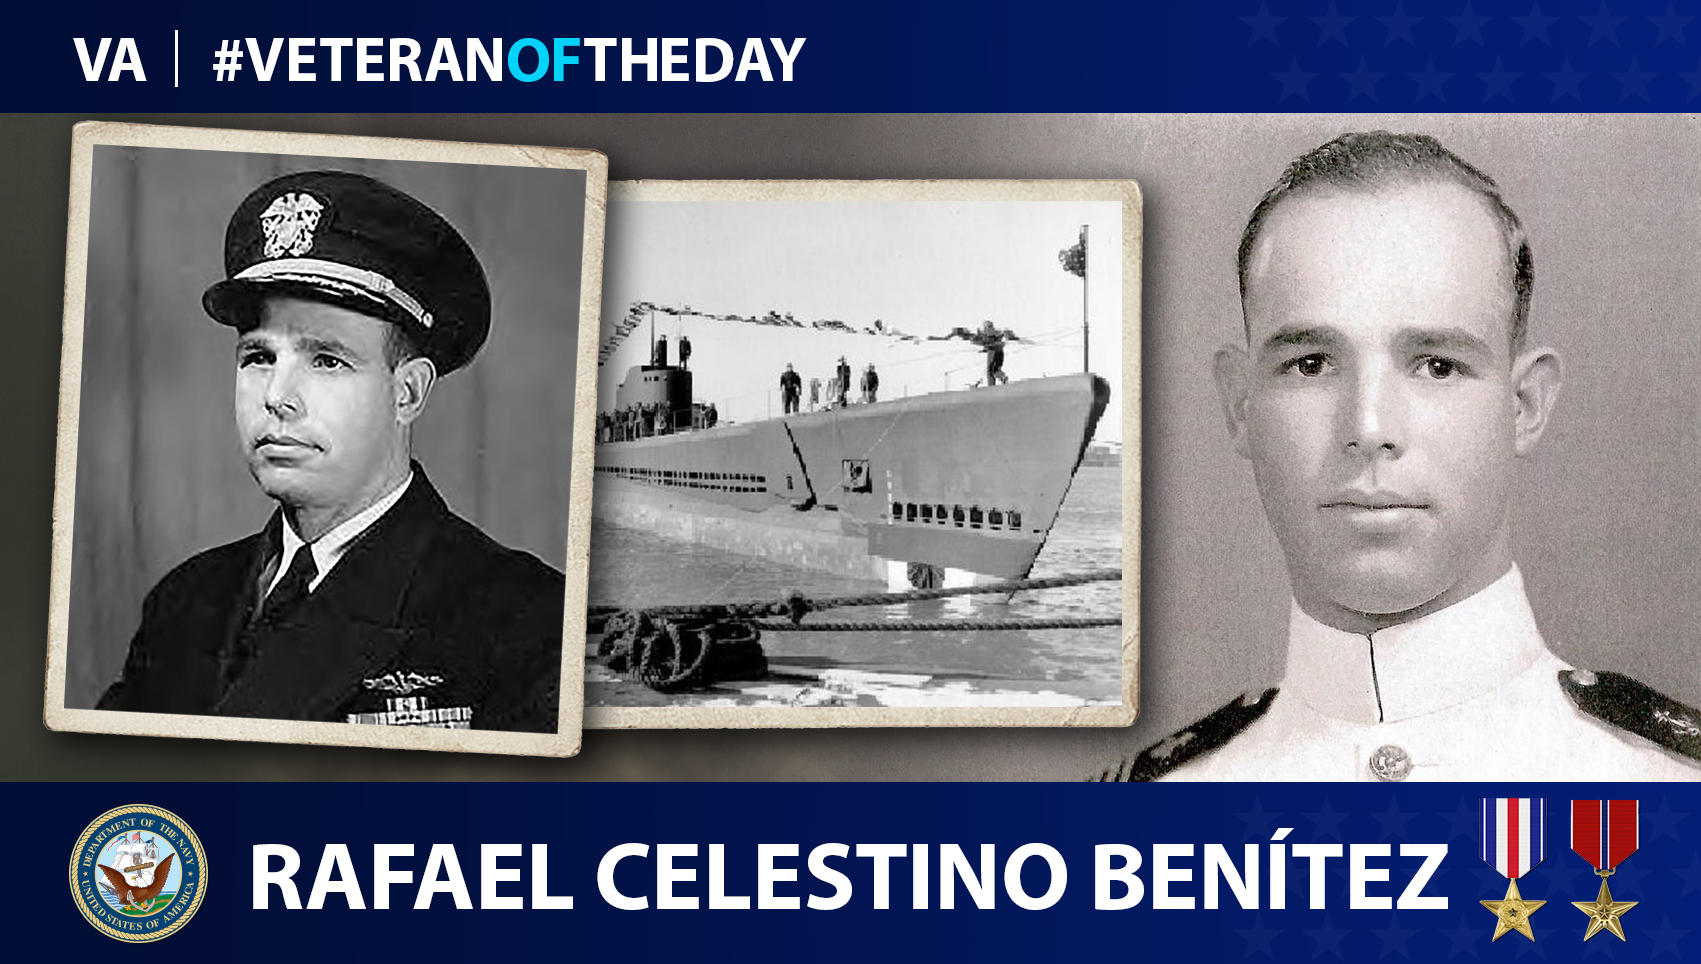 Navy Veteran Rafael Celestino Benitez is today’s Veteran of the Day.